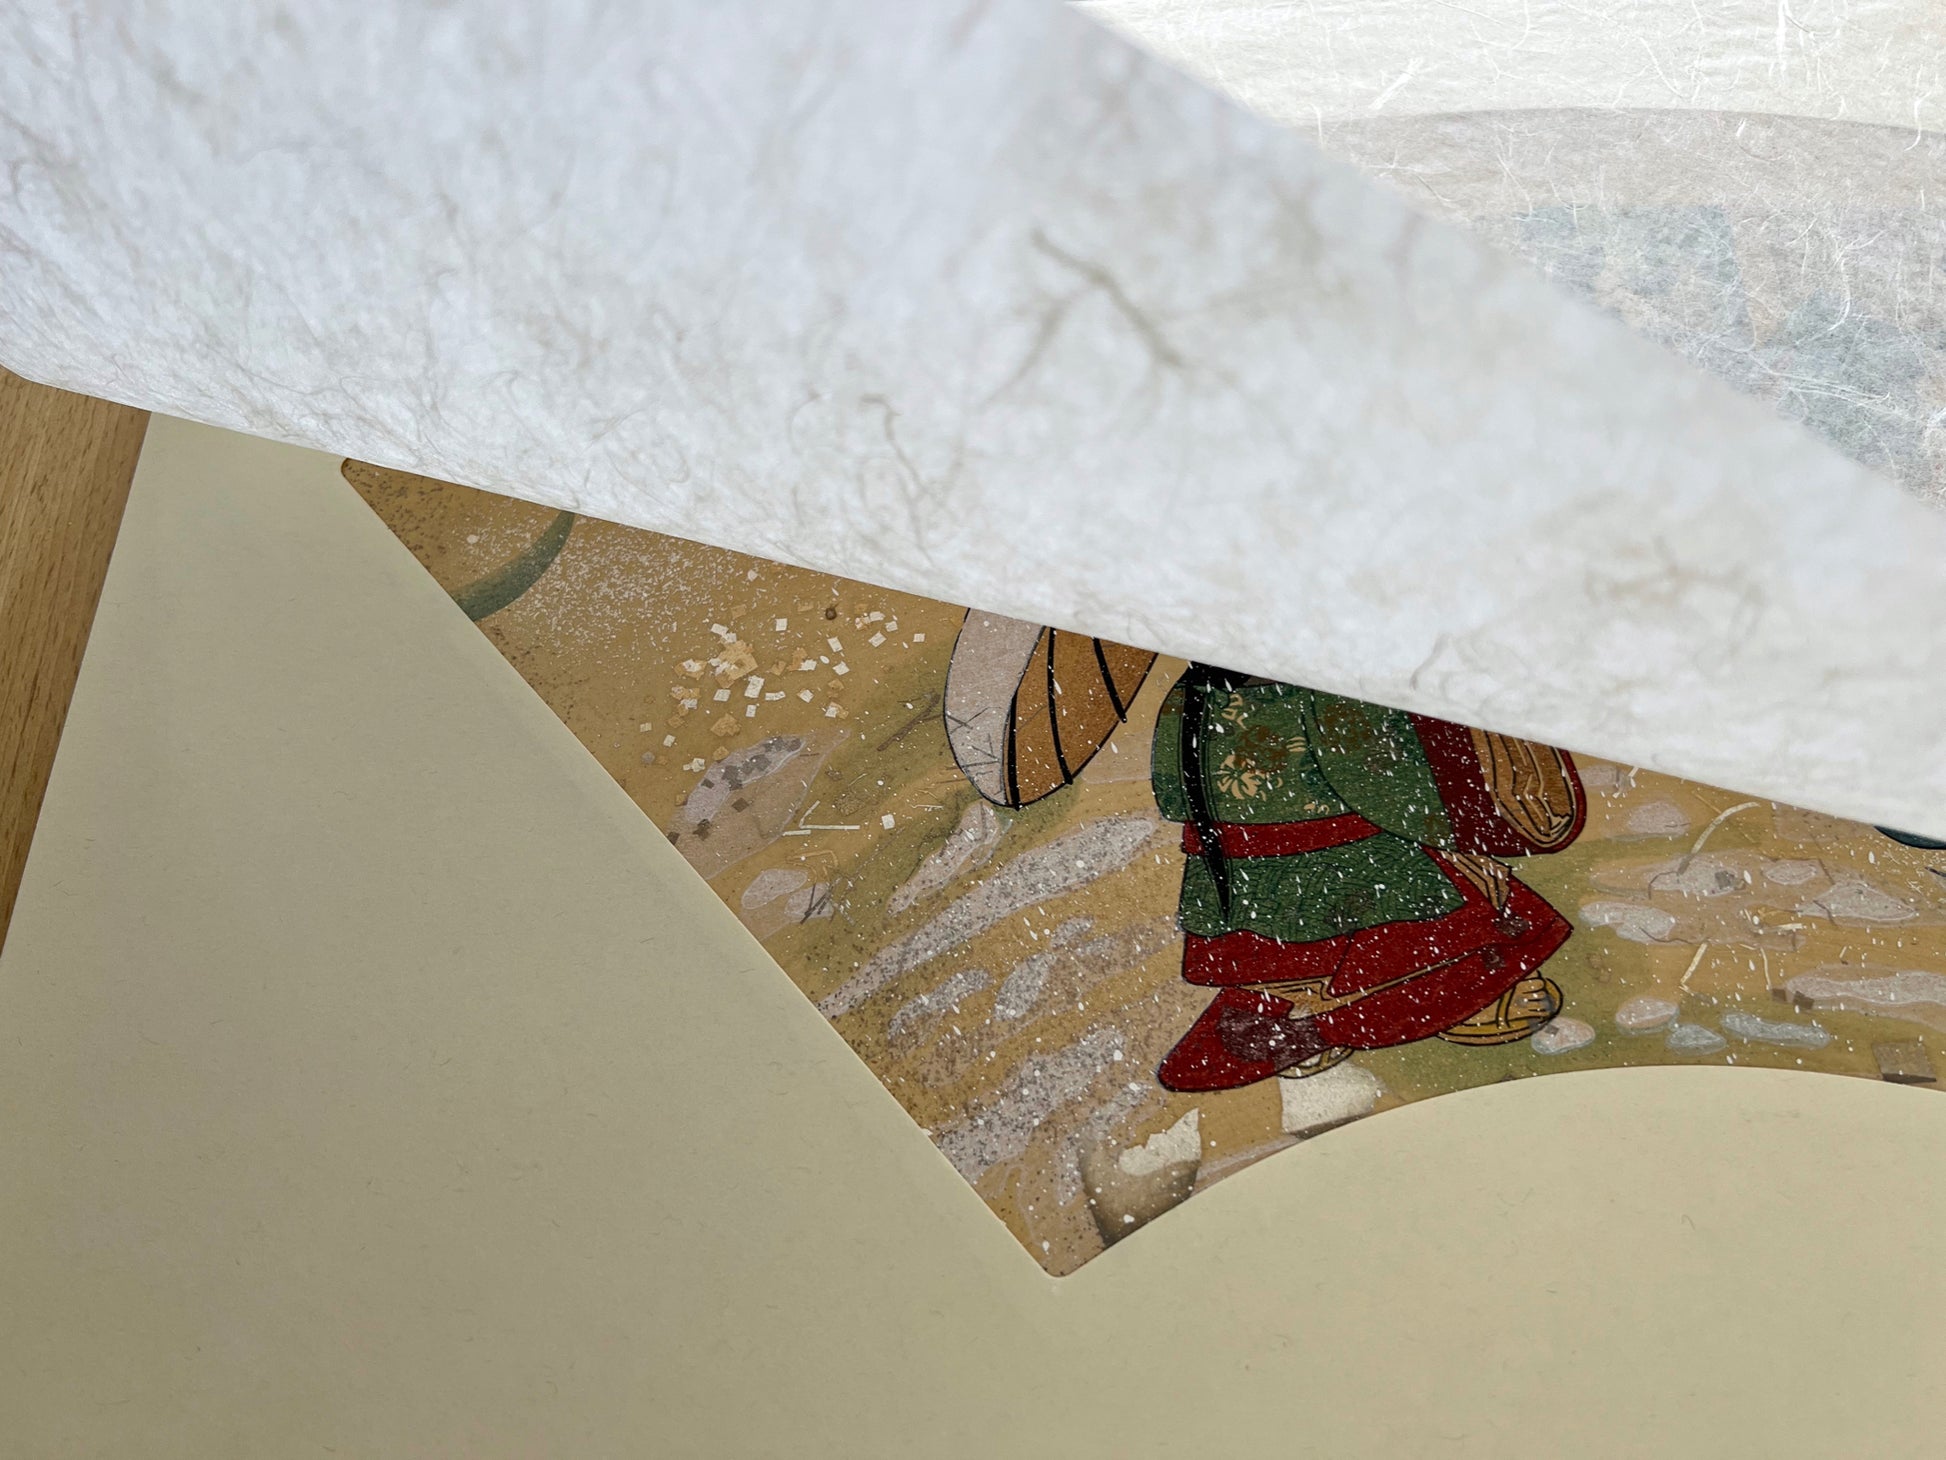 Estampe japonaise en forme d'éventail parsemée de fragments d'or et d'argent, matin neigeux, papier de protection, coin inférieur gauche.